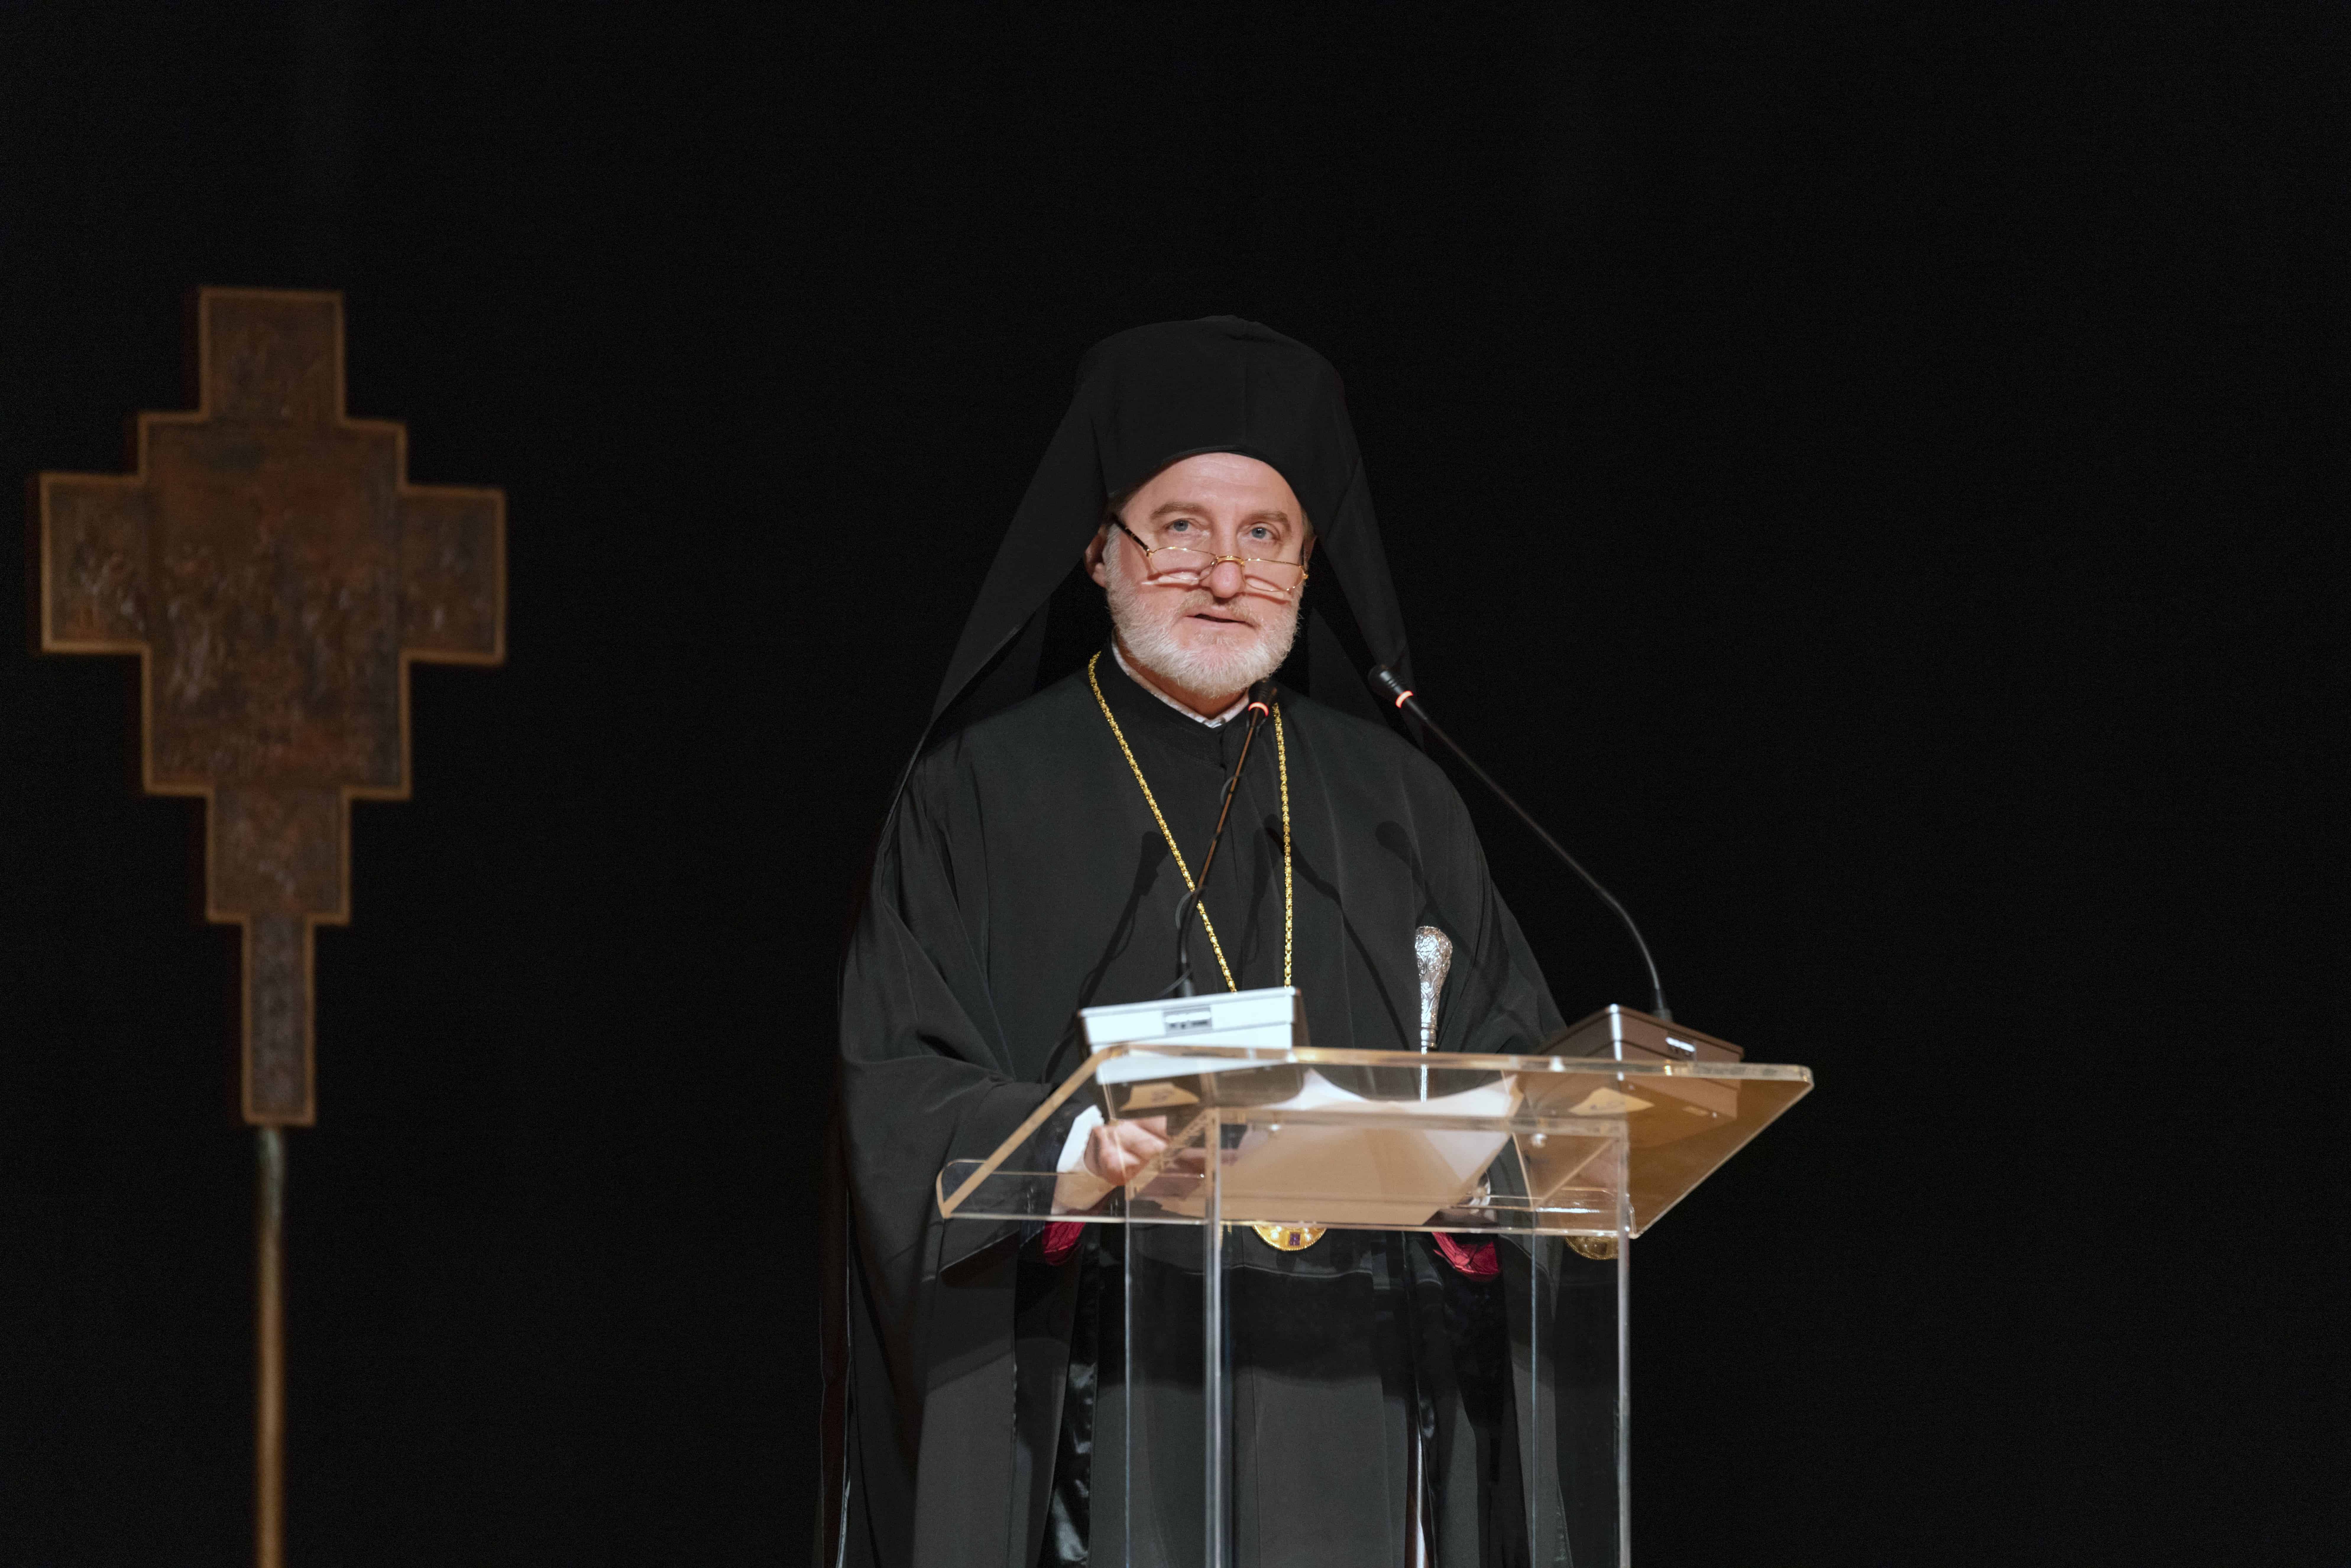 Archbishop Convocation 2019